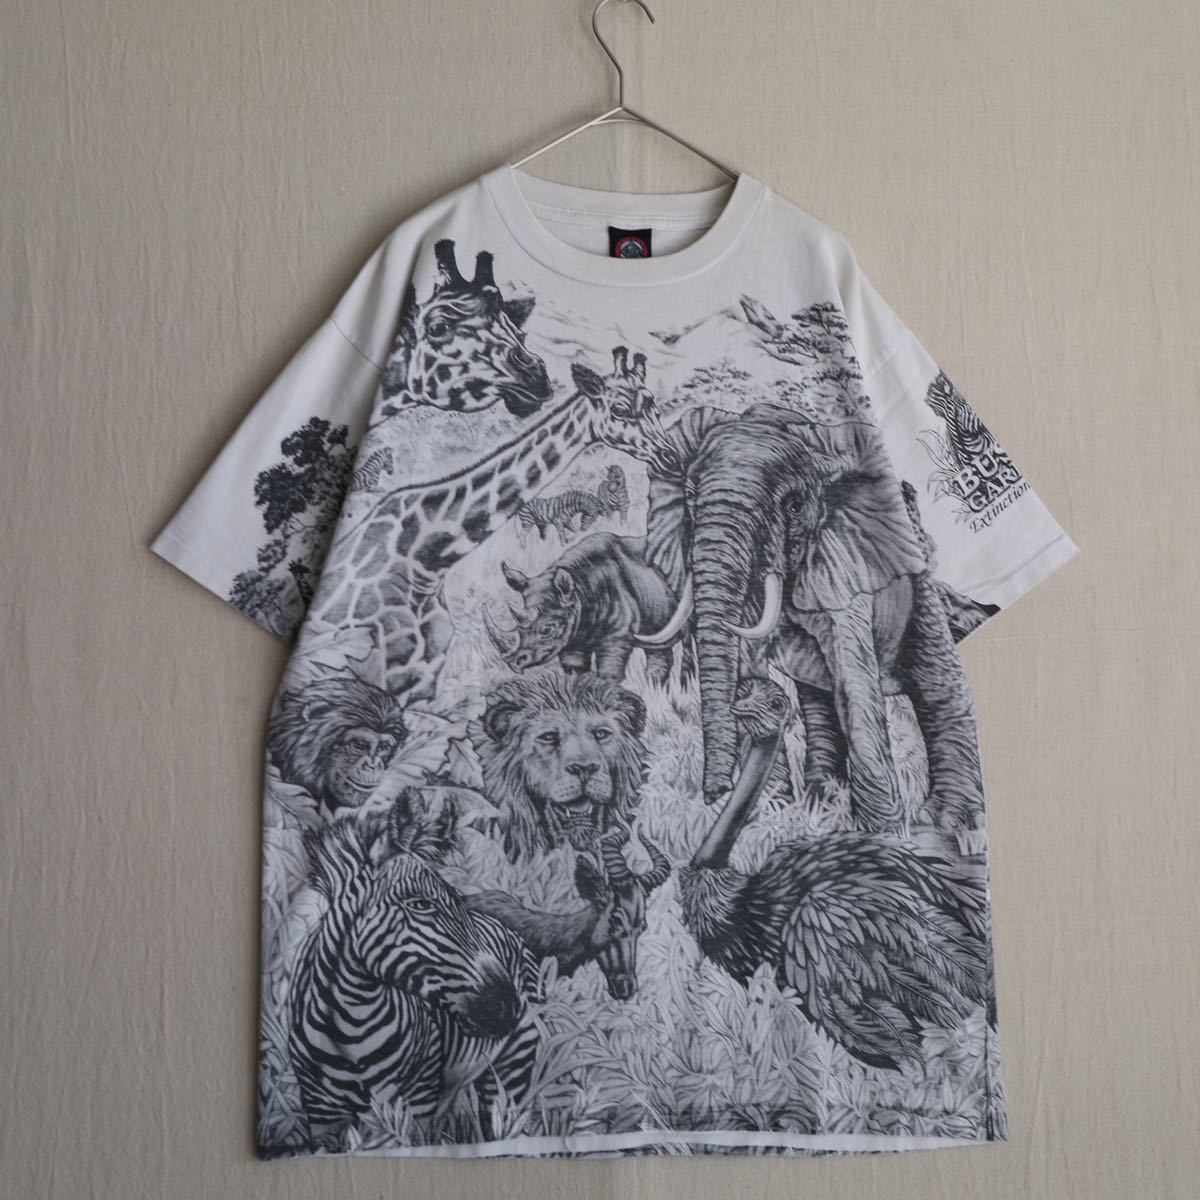 90s USA vintage Tシャツ / XL コットン ホワイト プリント イラスト 動物 半袖 ビンテージ T2-07027-9437